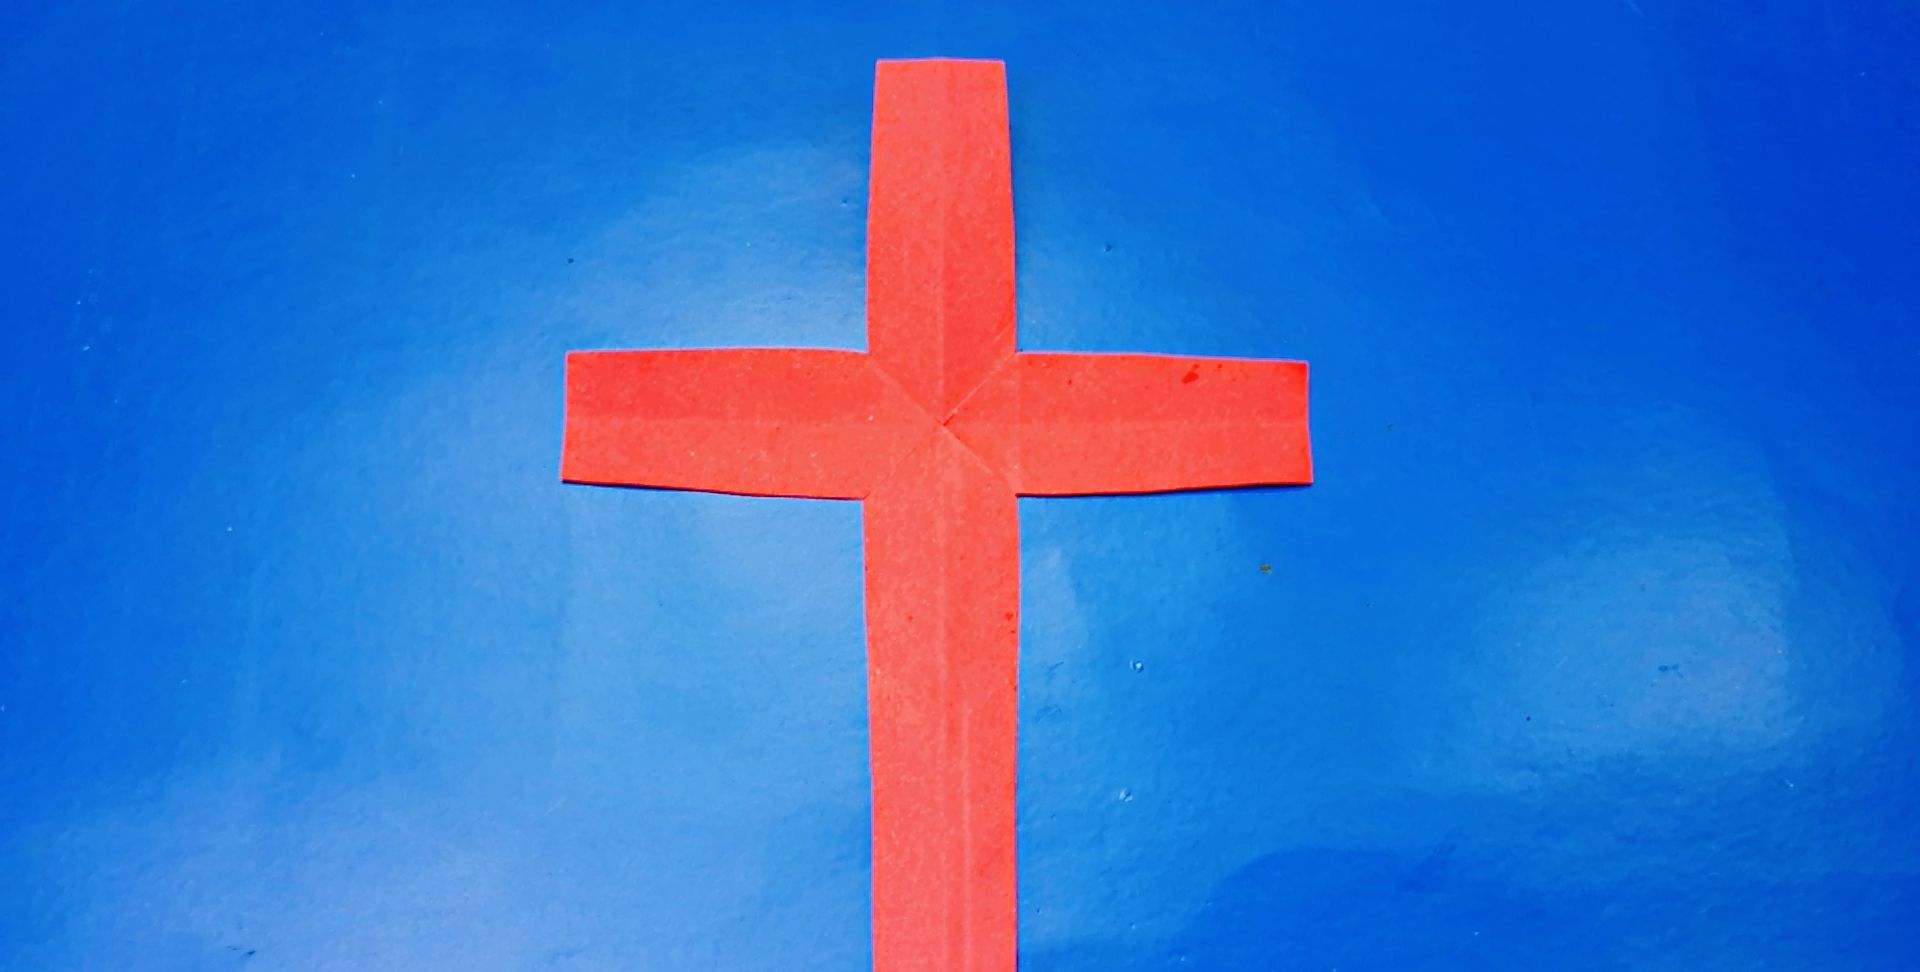 一张纸折十字架图片